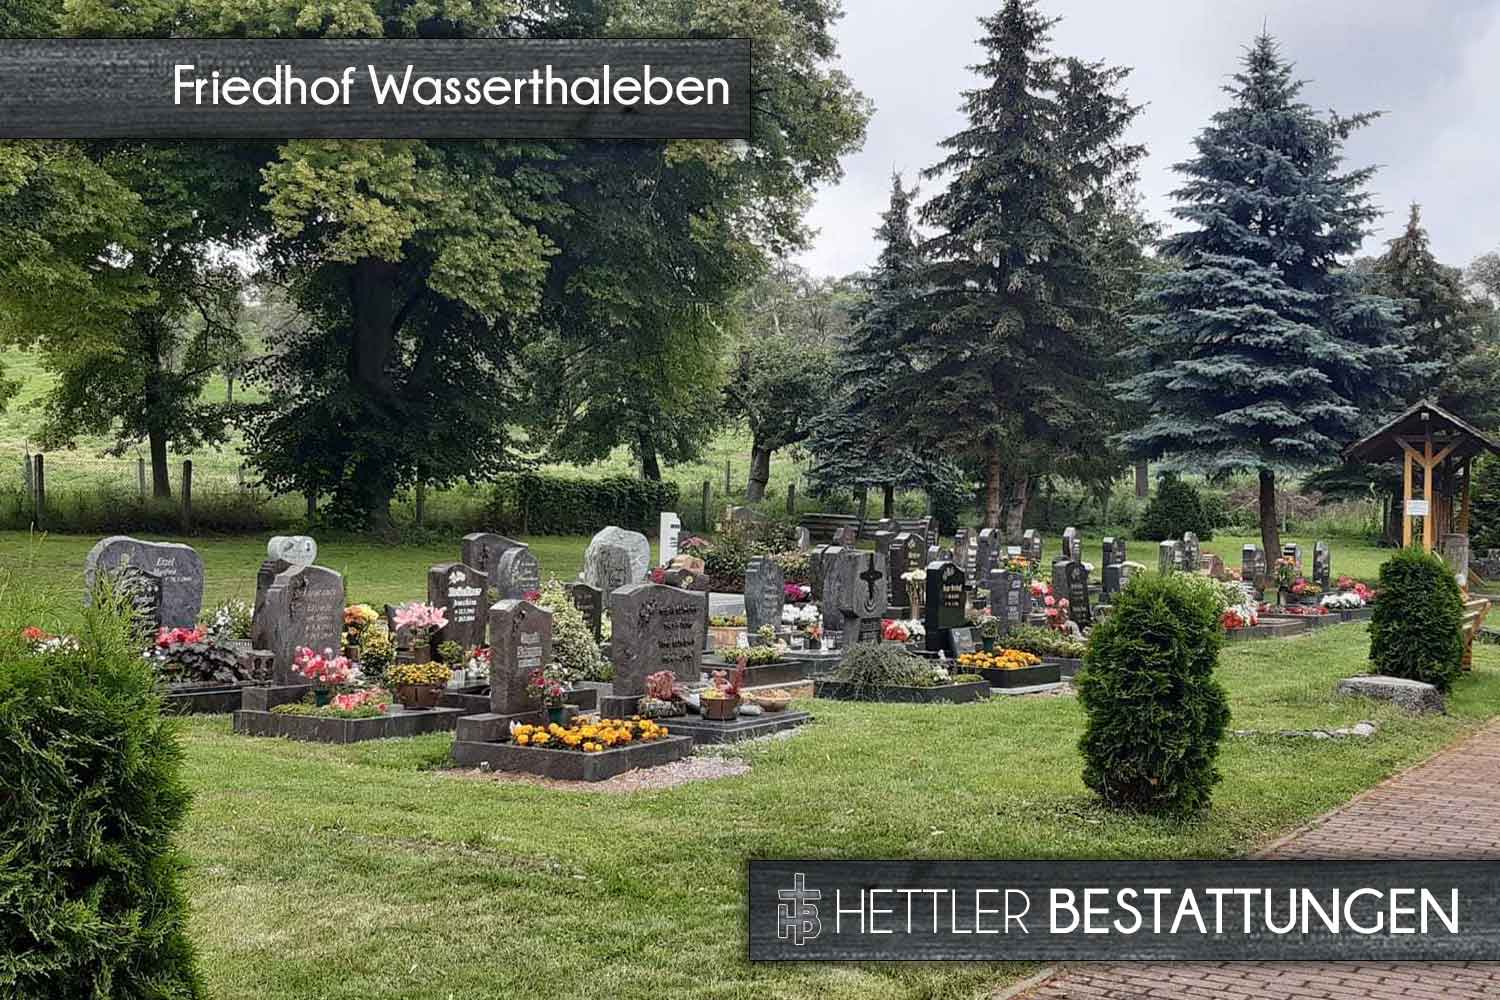 Friedhof in Wasserthaleben. Ihr Ort des Abschieds mit Hettler Bestattungen.